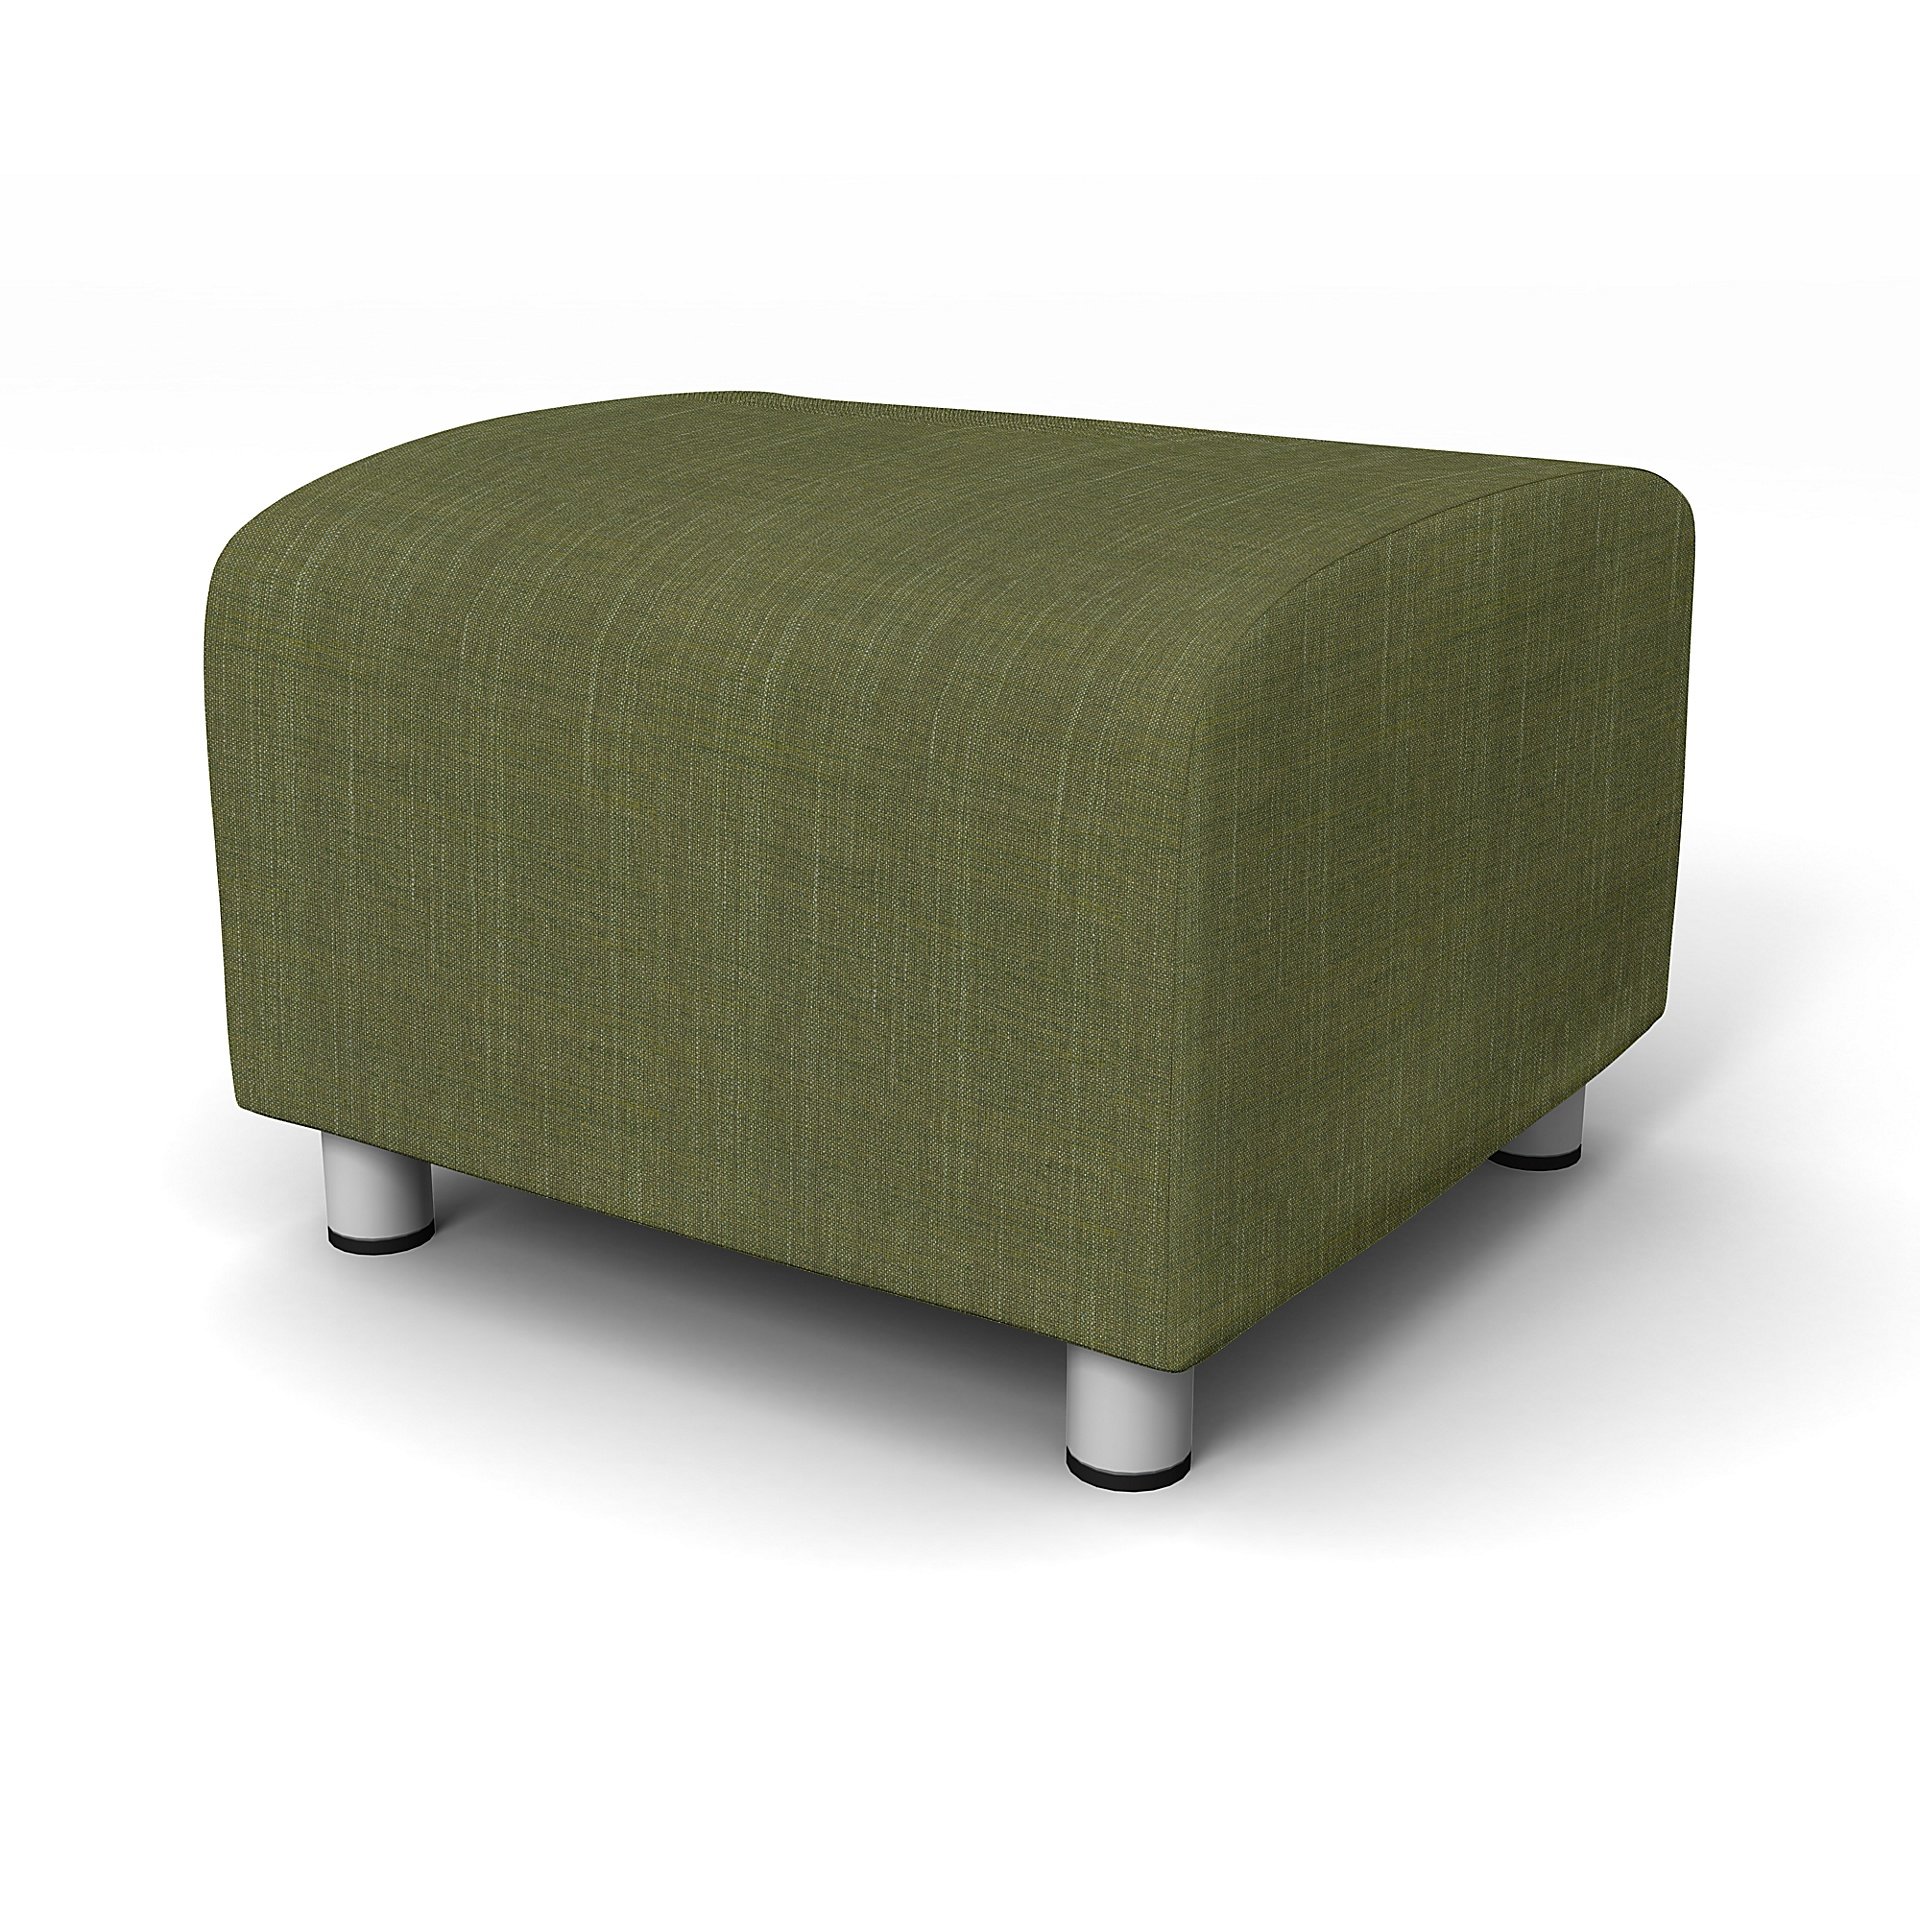 IKEA - Klippan Footstool Cover, Moss Green, Boucle & Texture - Bemz